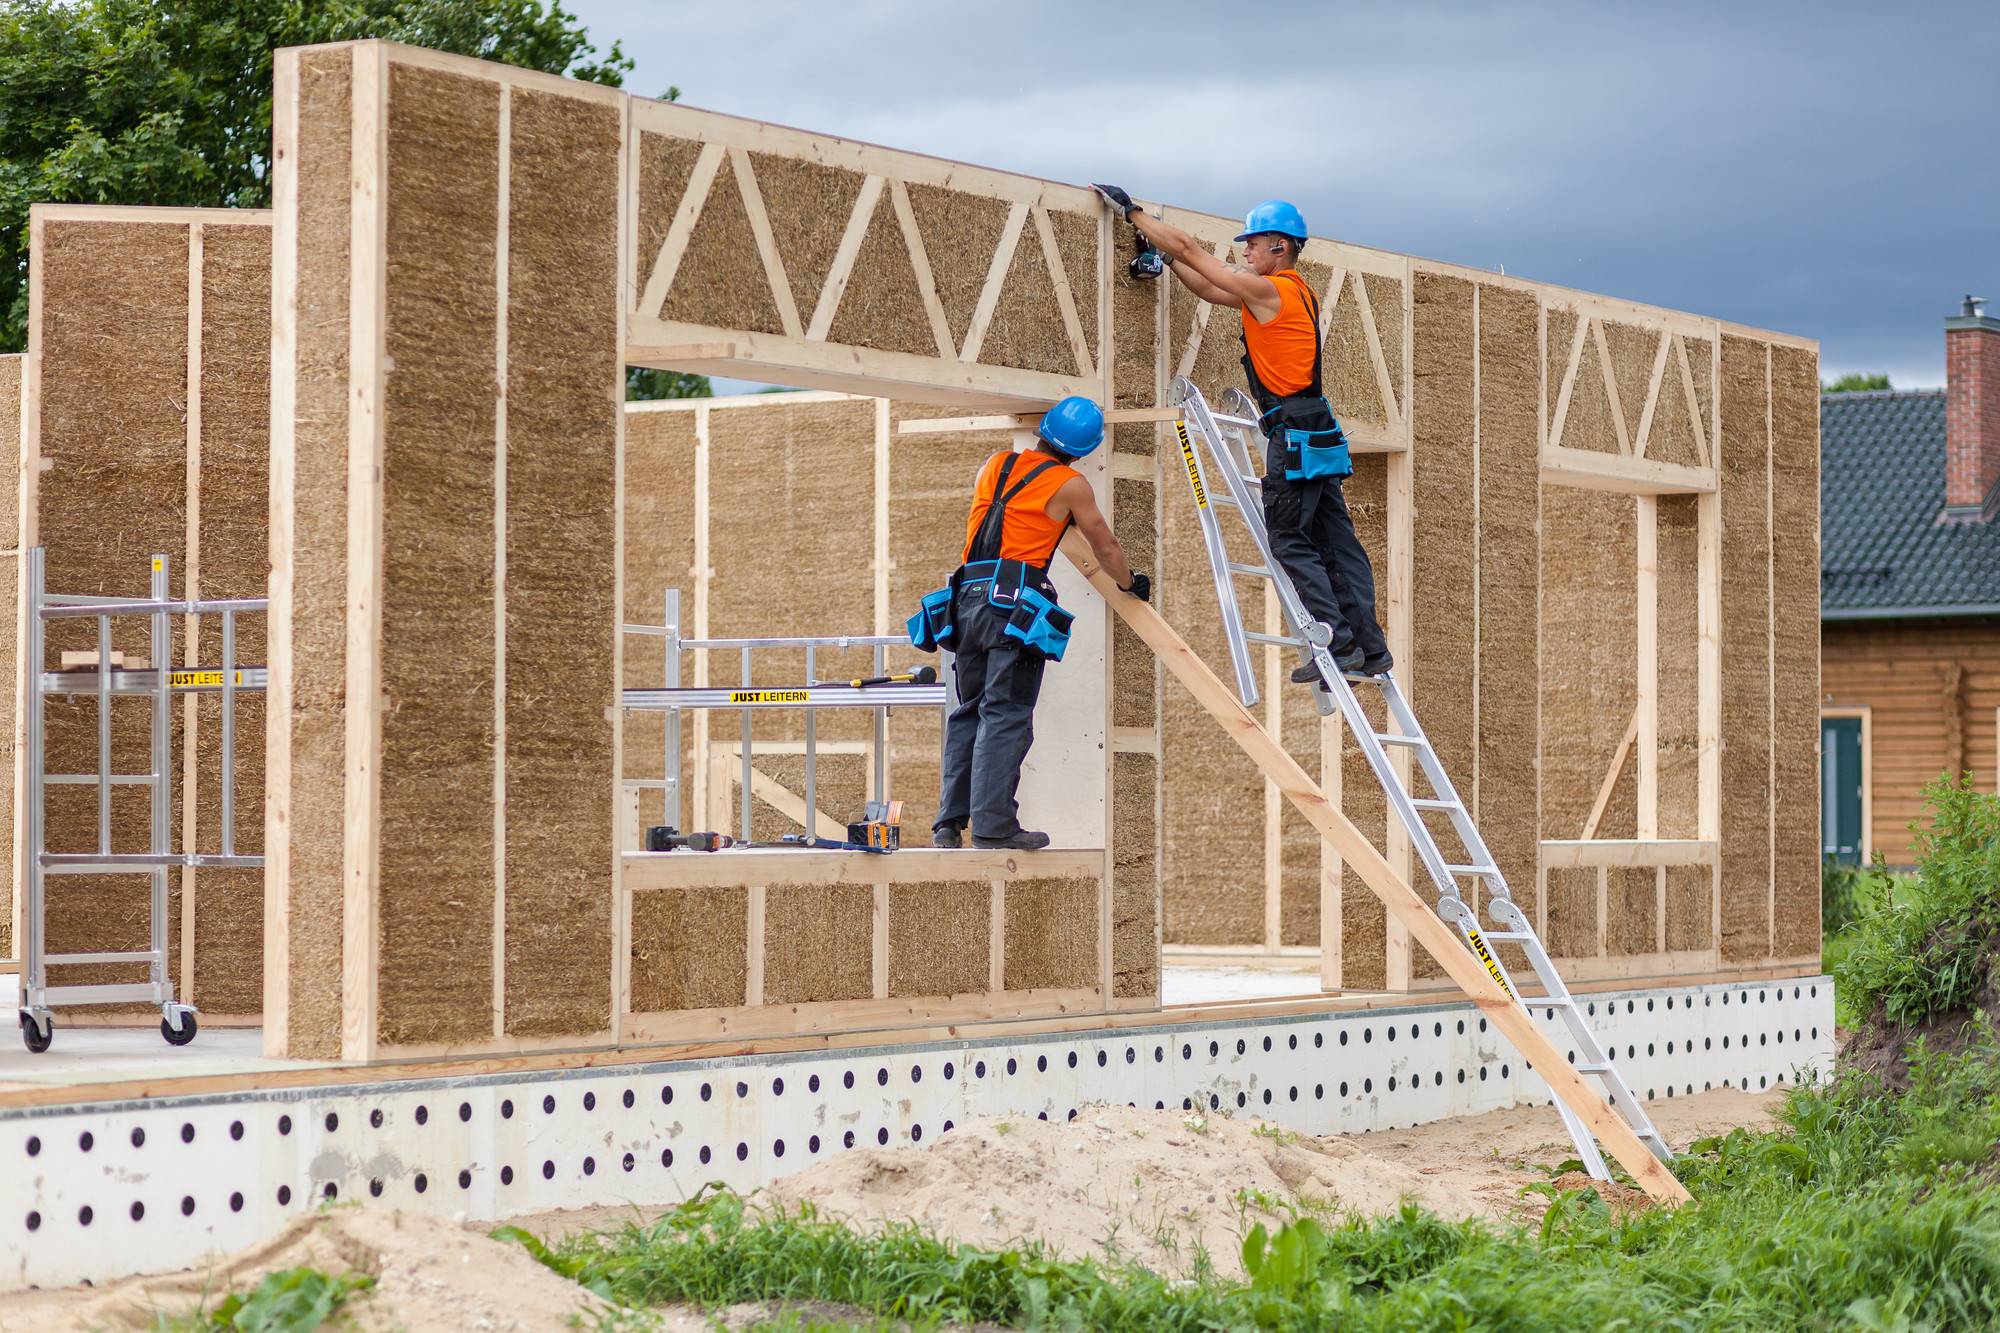 Из чего лучше строить дом: обзор строительных материалов для возведения стен дома для постоянного проживания